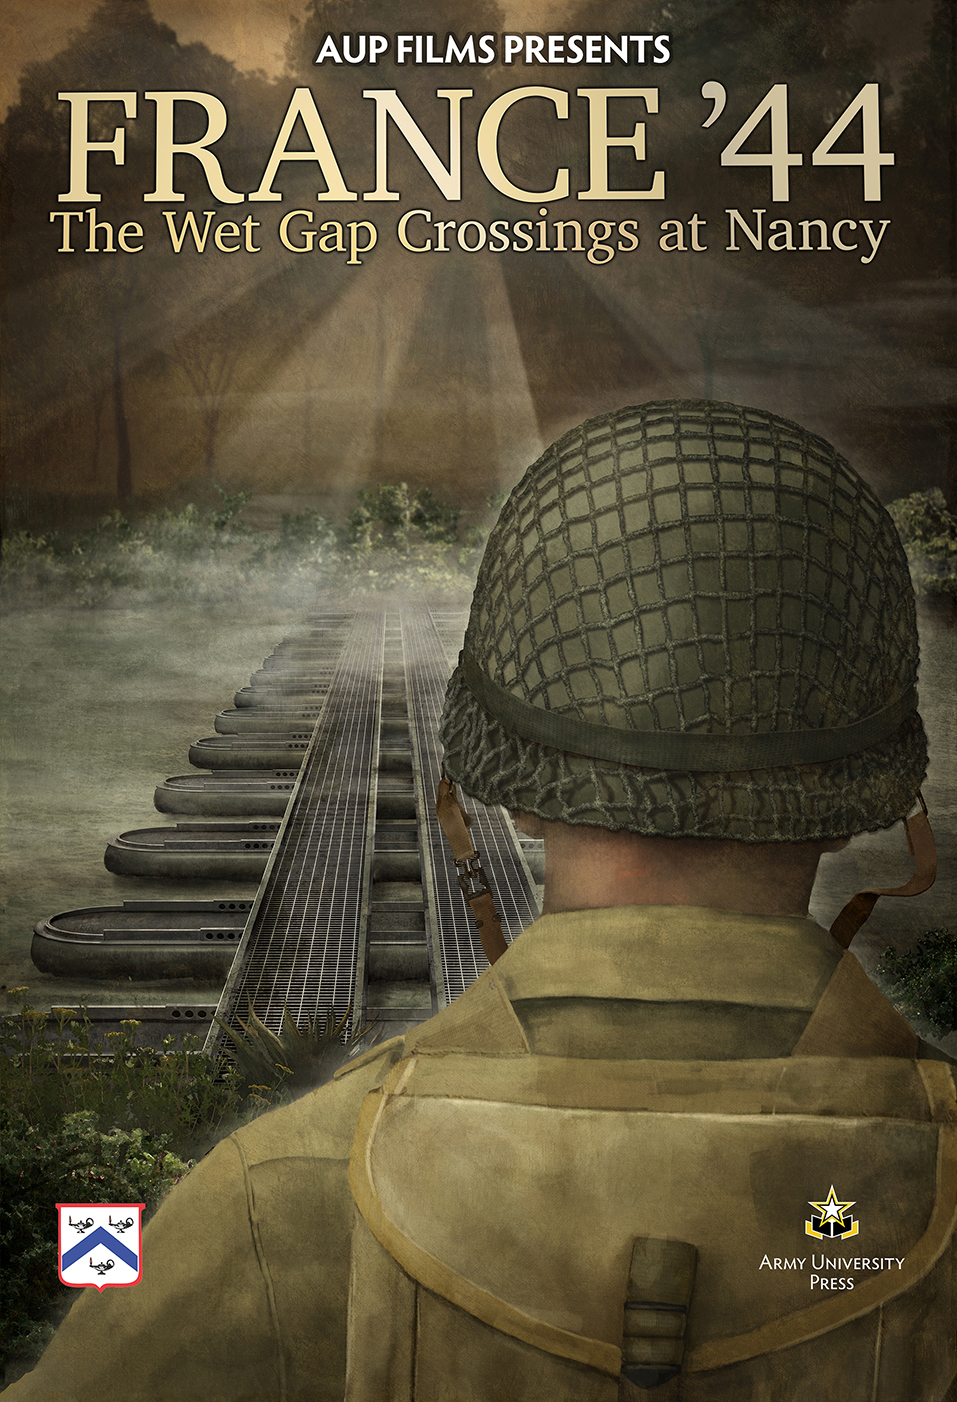 The Wet Gap Crossings at Nancy